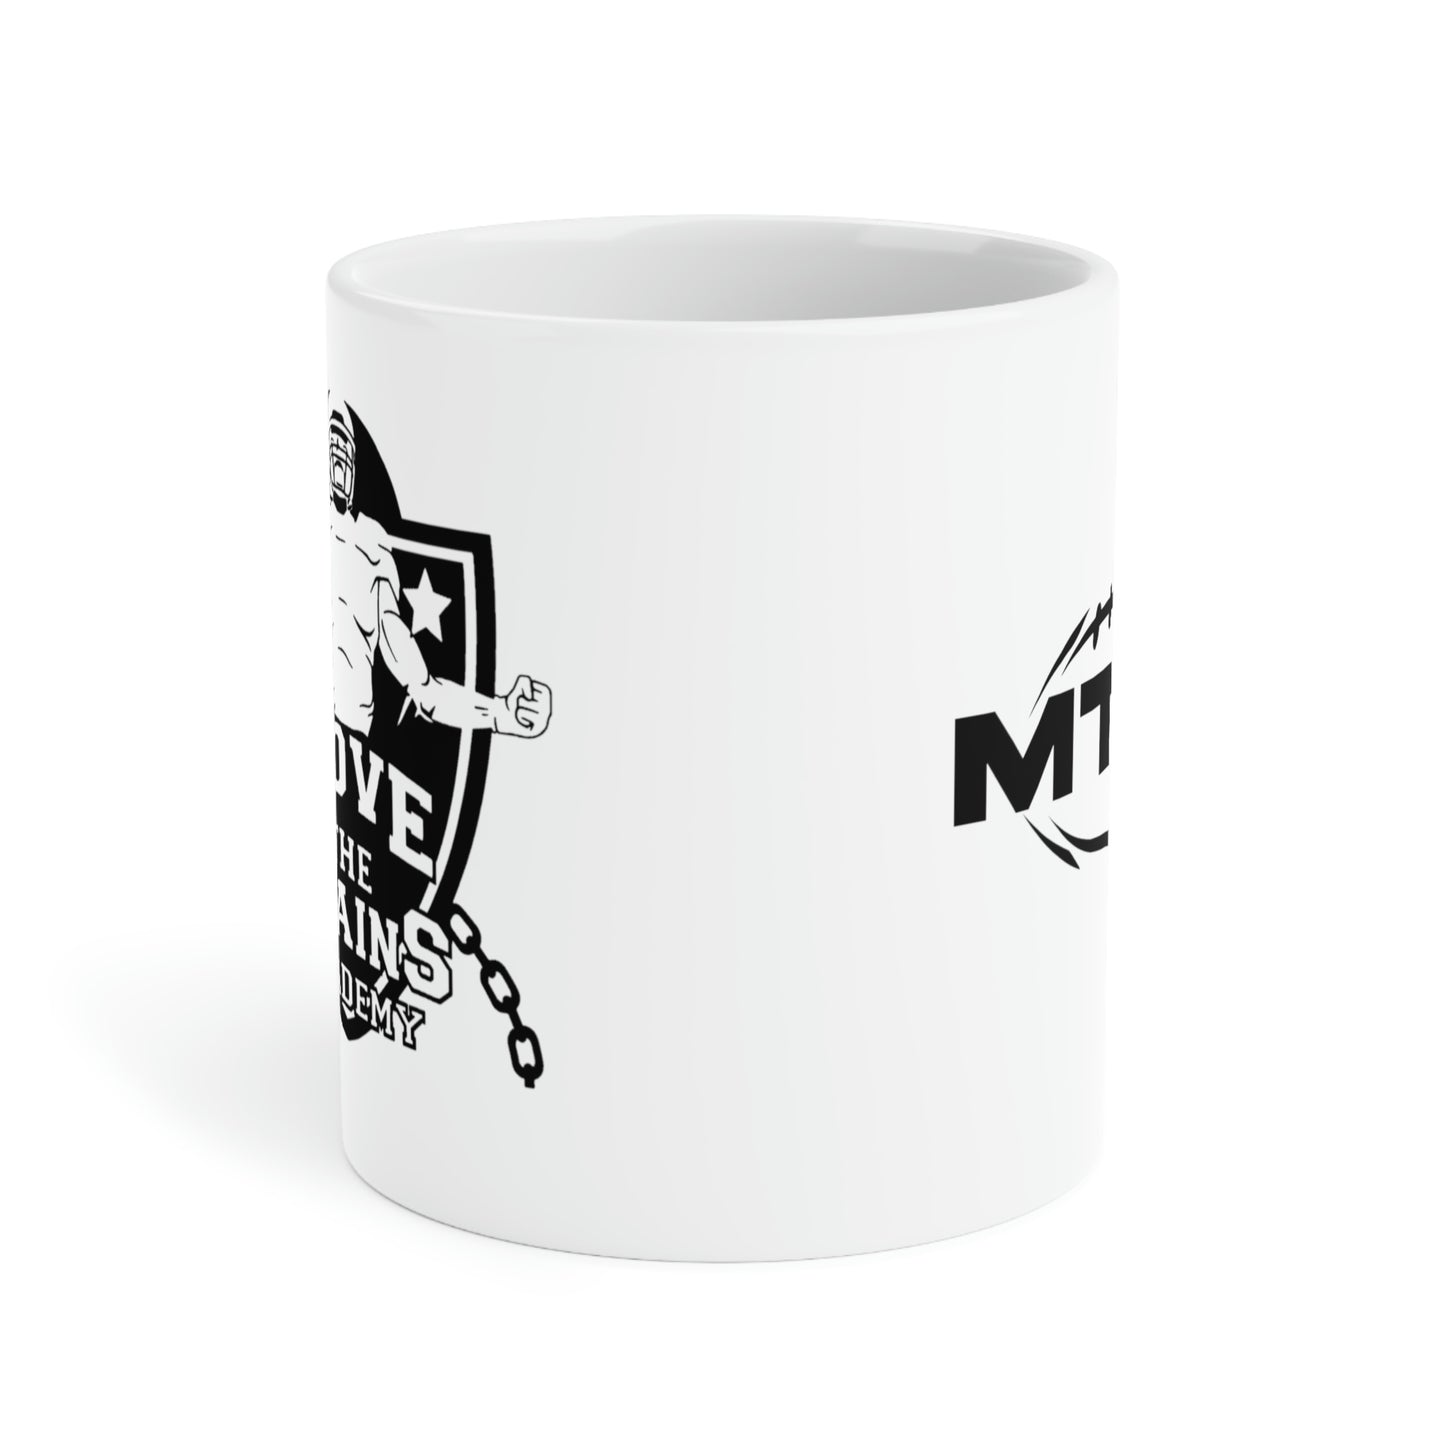 MTCA Ceramic Mugs (11oz\15oz\20oz)